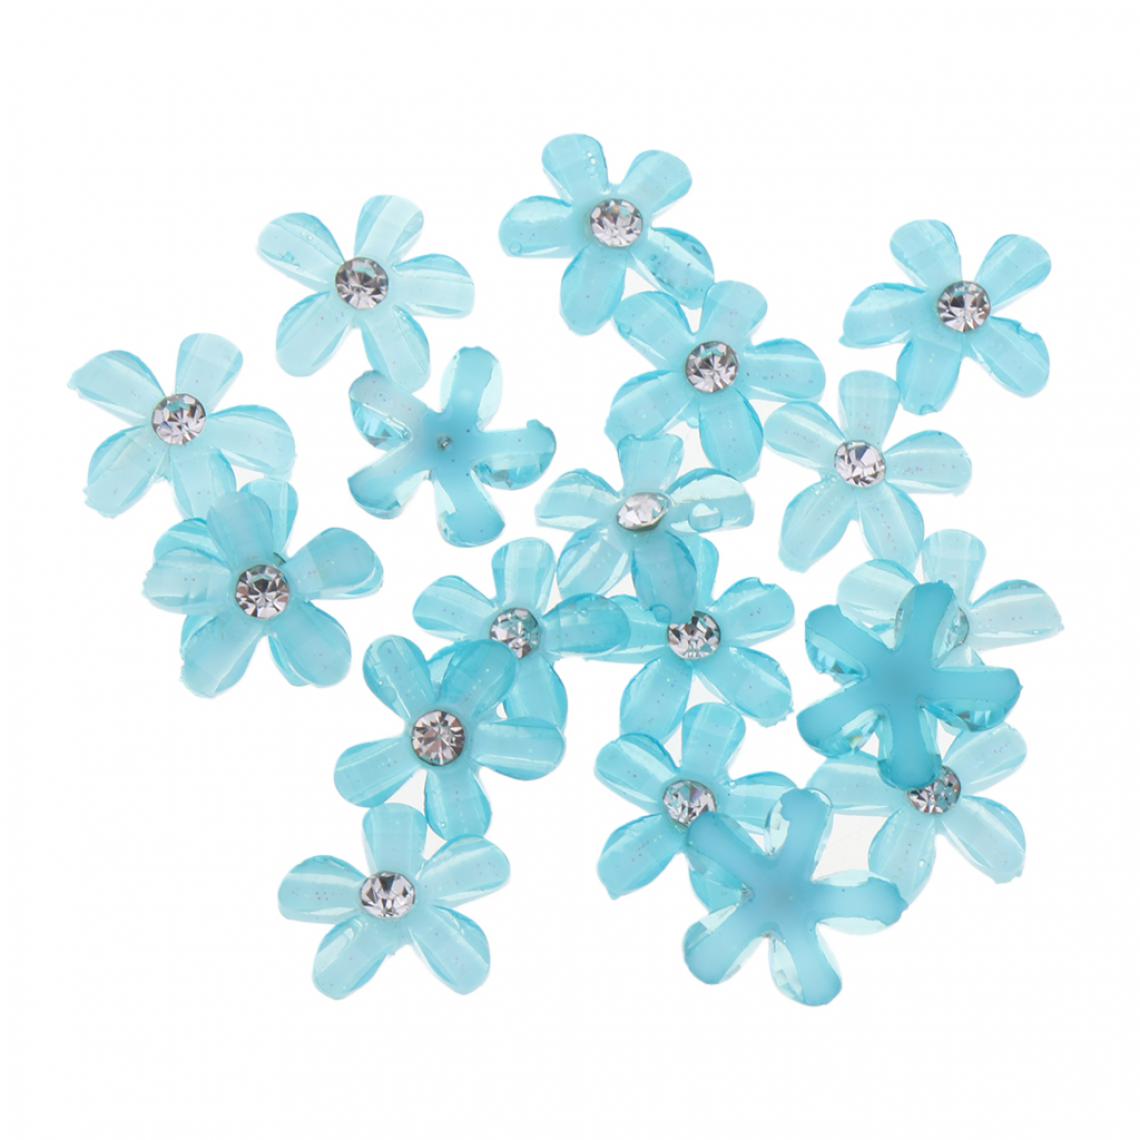 marque generique - 20 fleurs flatback bouton embellissements strass pour mariage royalblue - Poignée de meuble